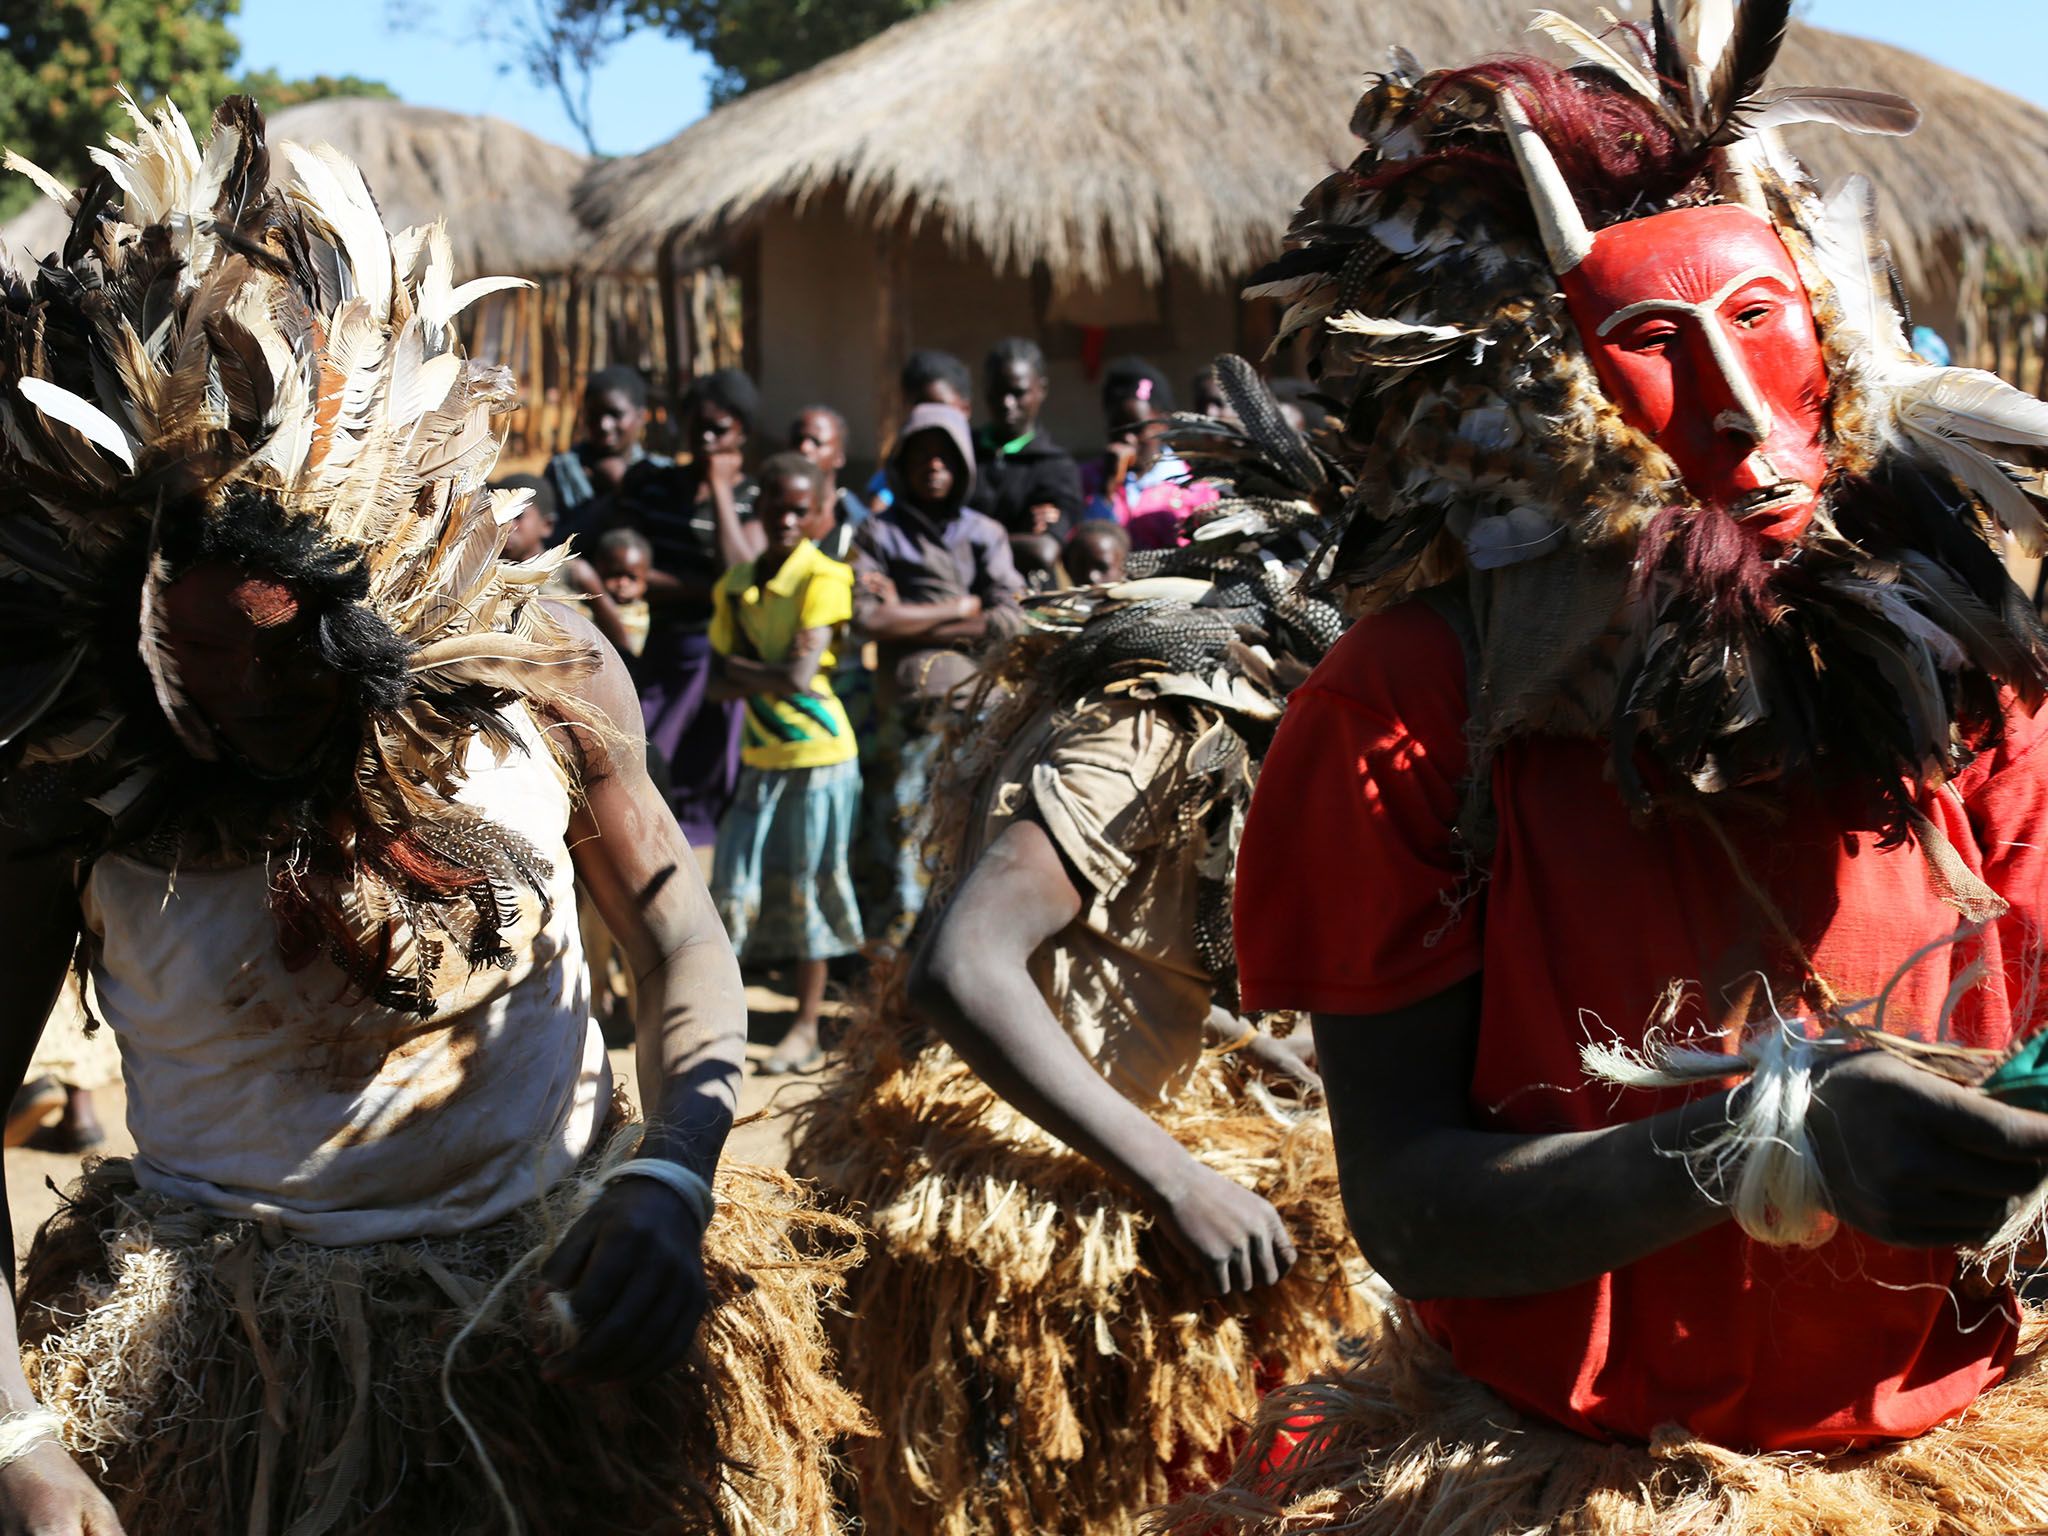 معسكر كويندا بوش، لوساكا، زامبيا: أعضاء القبيلة... [Photo of the day - مارس 2016]